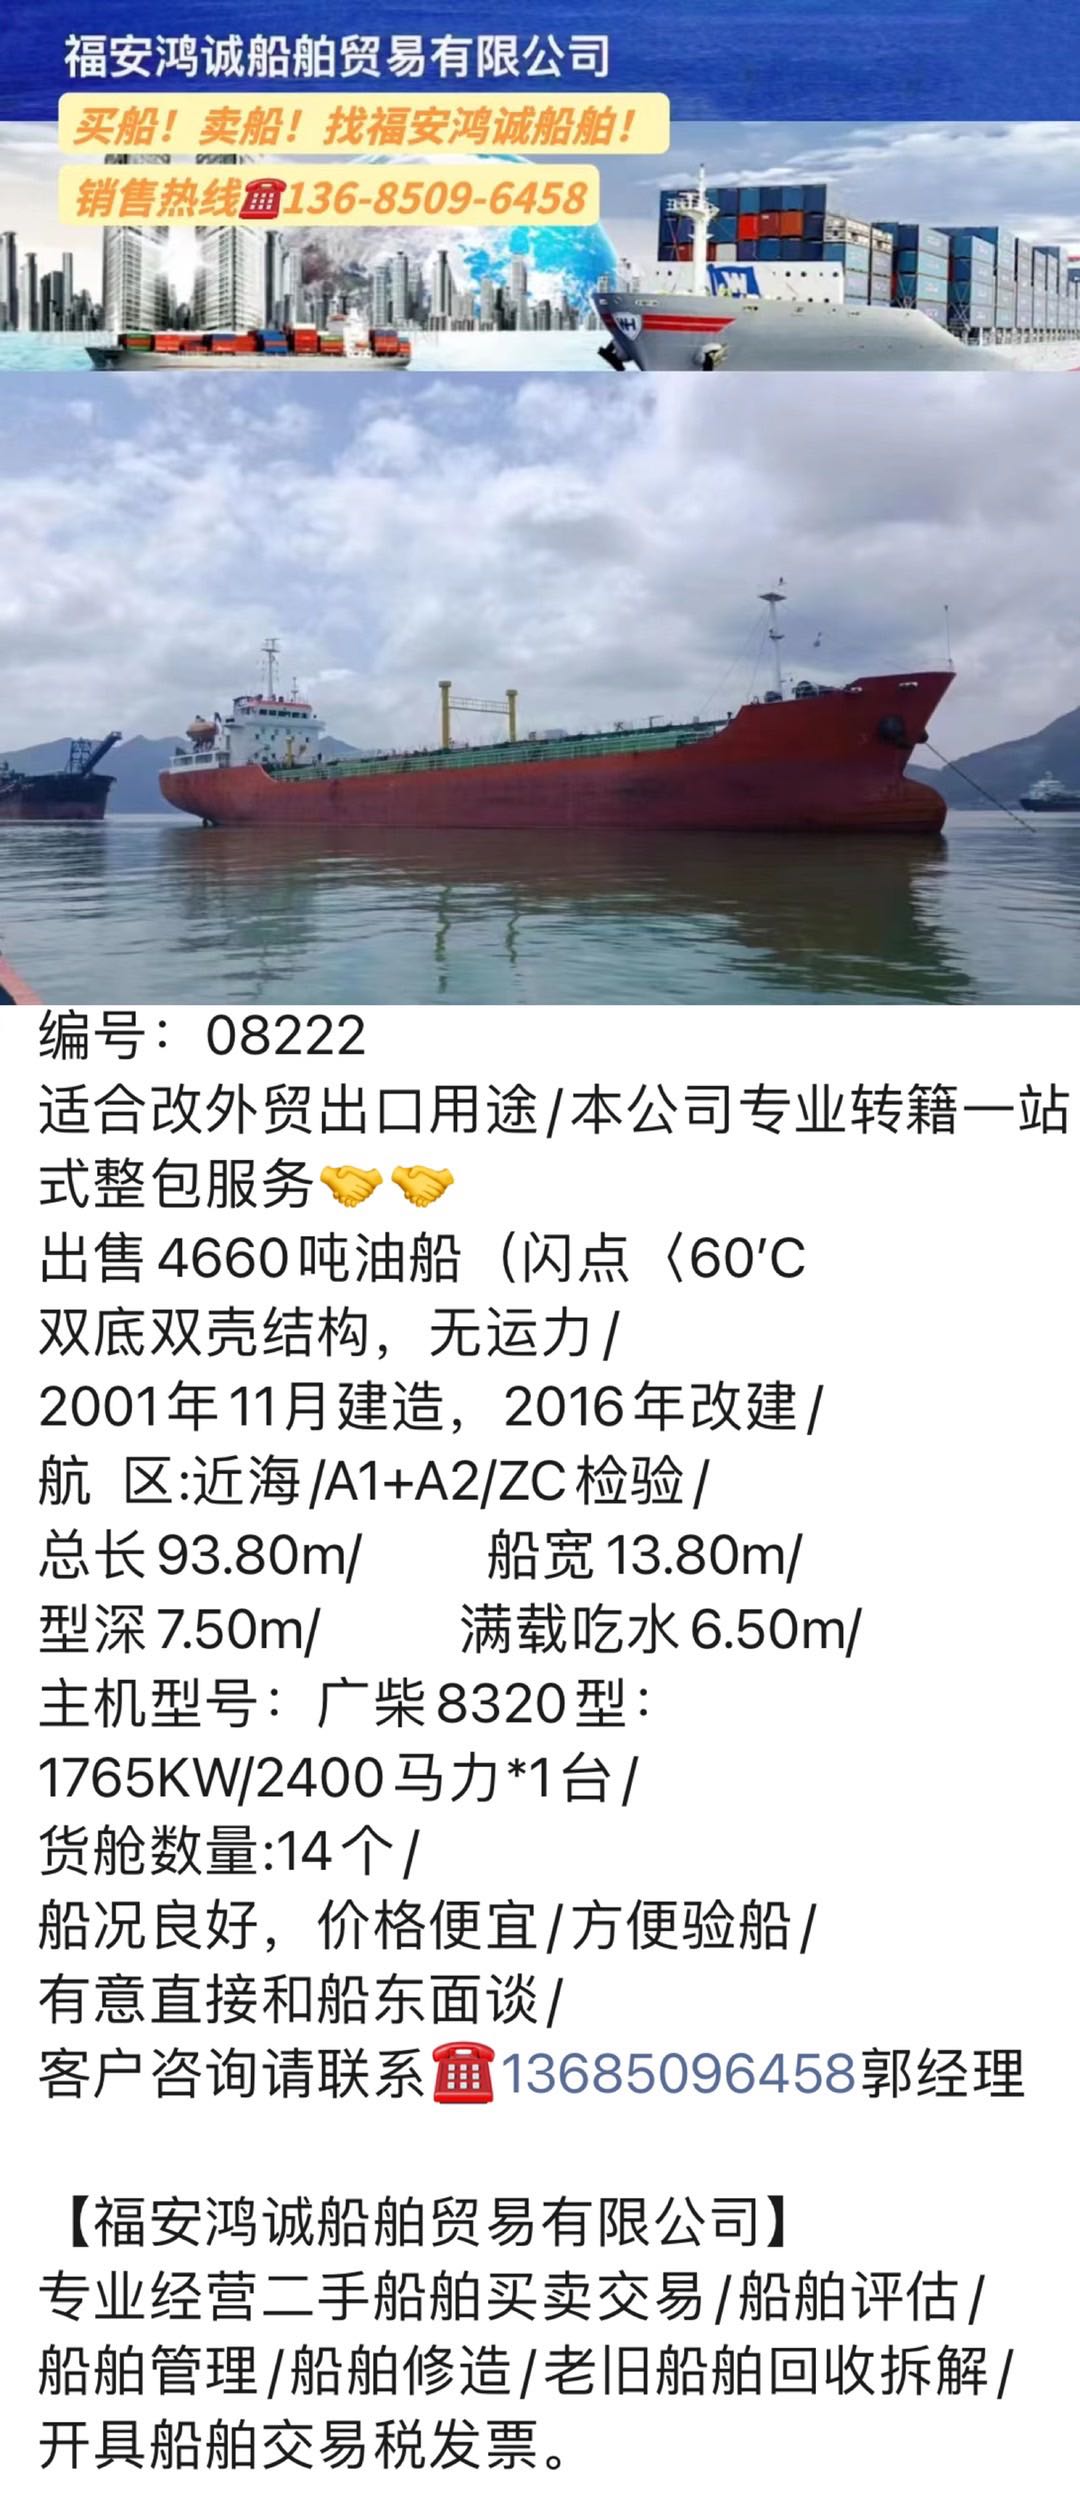 出售多艘2000吨至5000吨油船适合改外贸出口用途